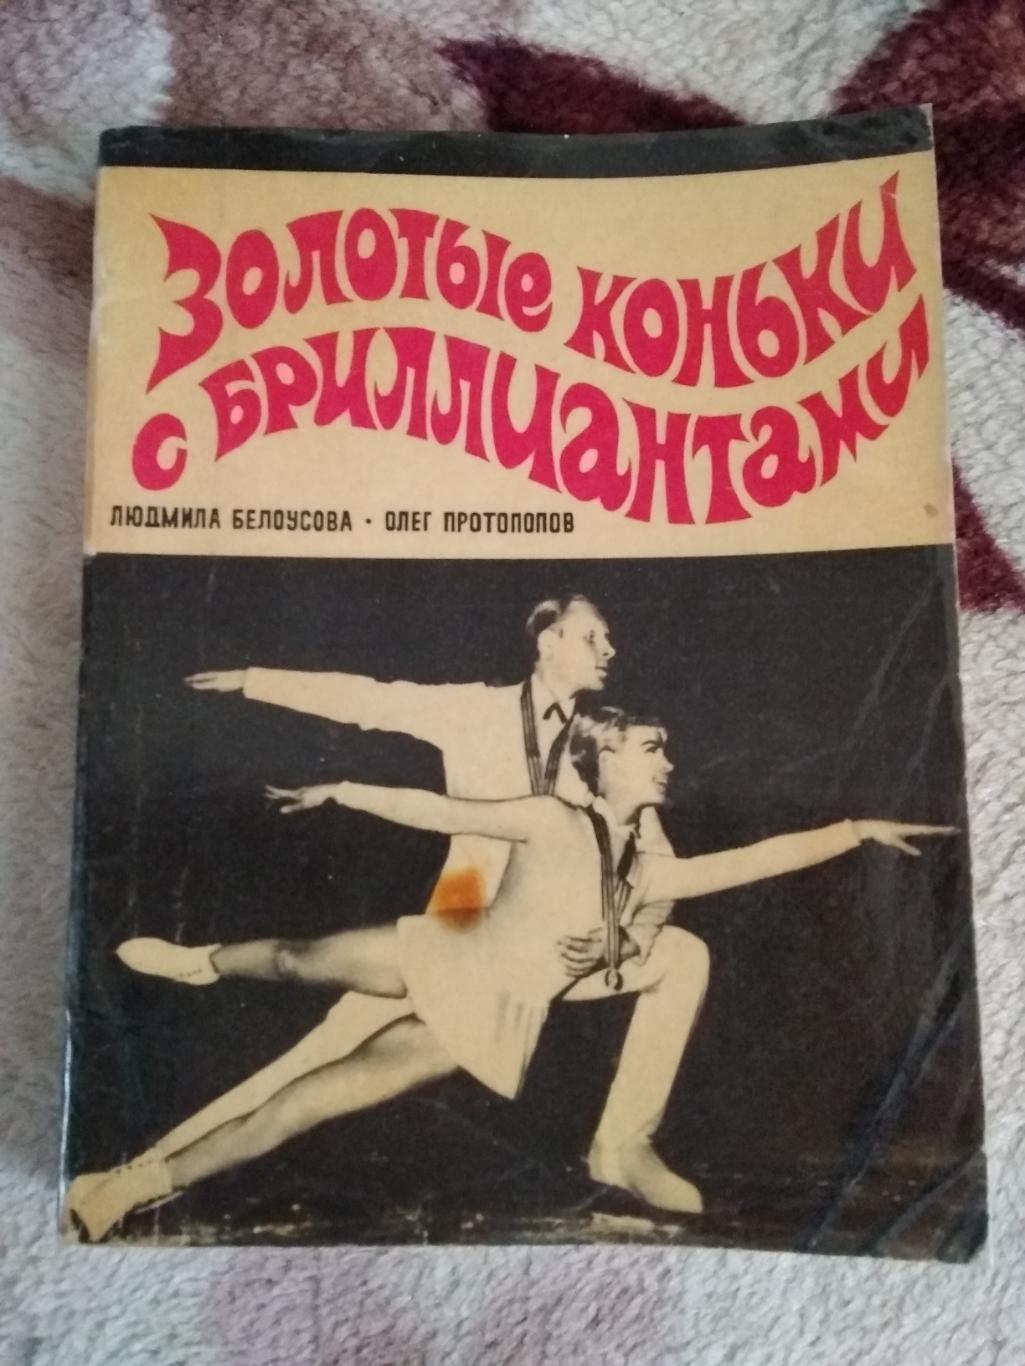 Л.Белоусова,О.Протопопов. Золотые коньки с бриллиантами.ФиС 1971.